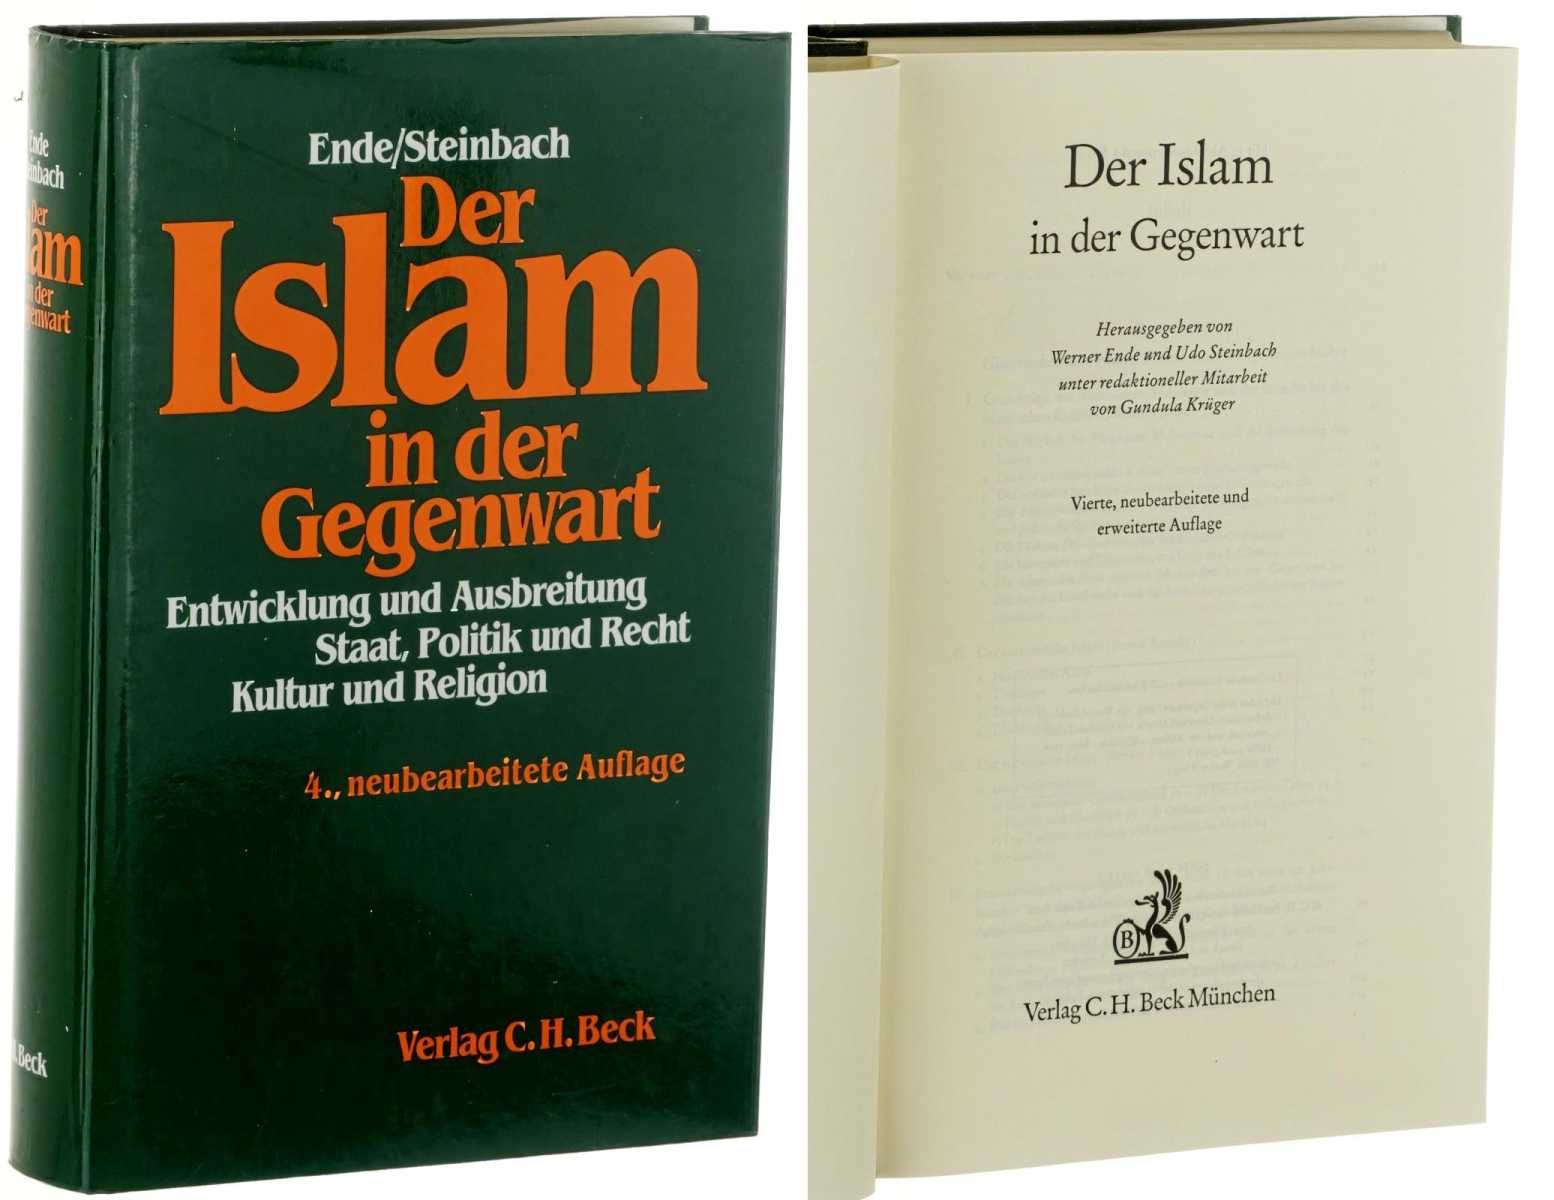   Der Islam in der Gegenwart. Hrsg. von Werner Ende, Udo Steinbach, Gundula Krüger. 